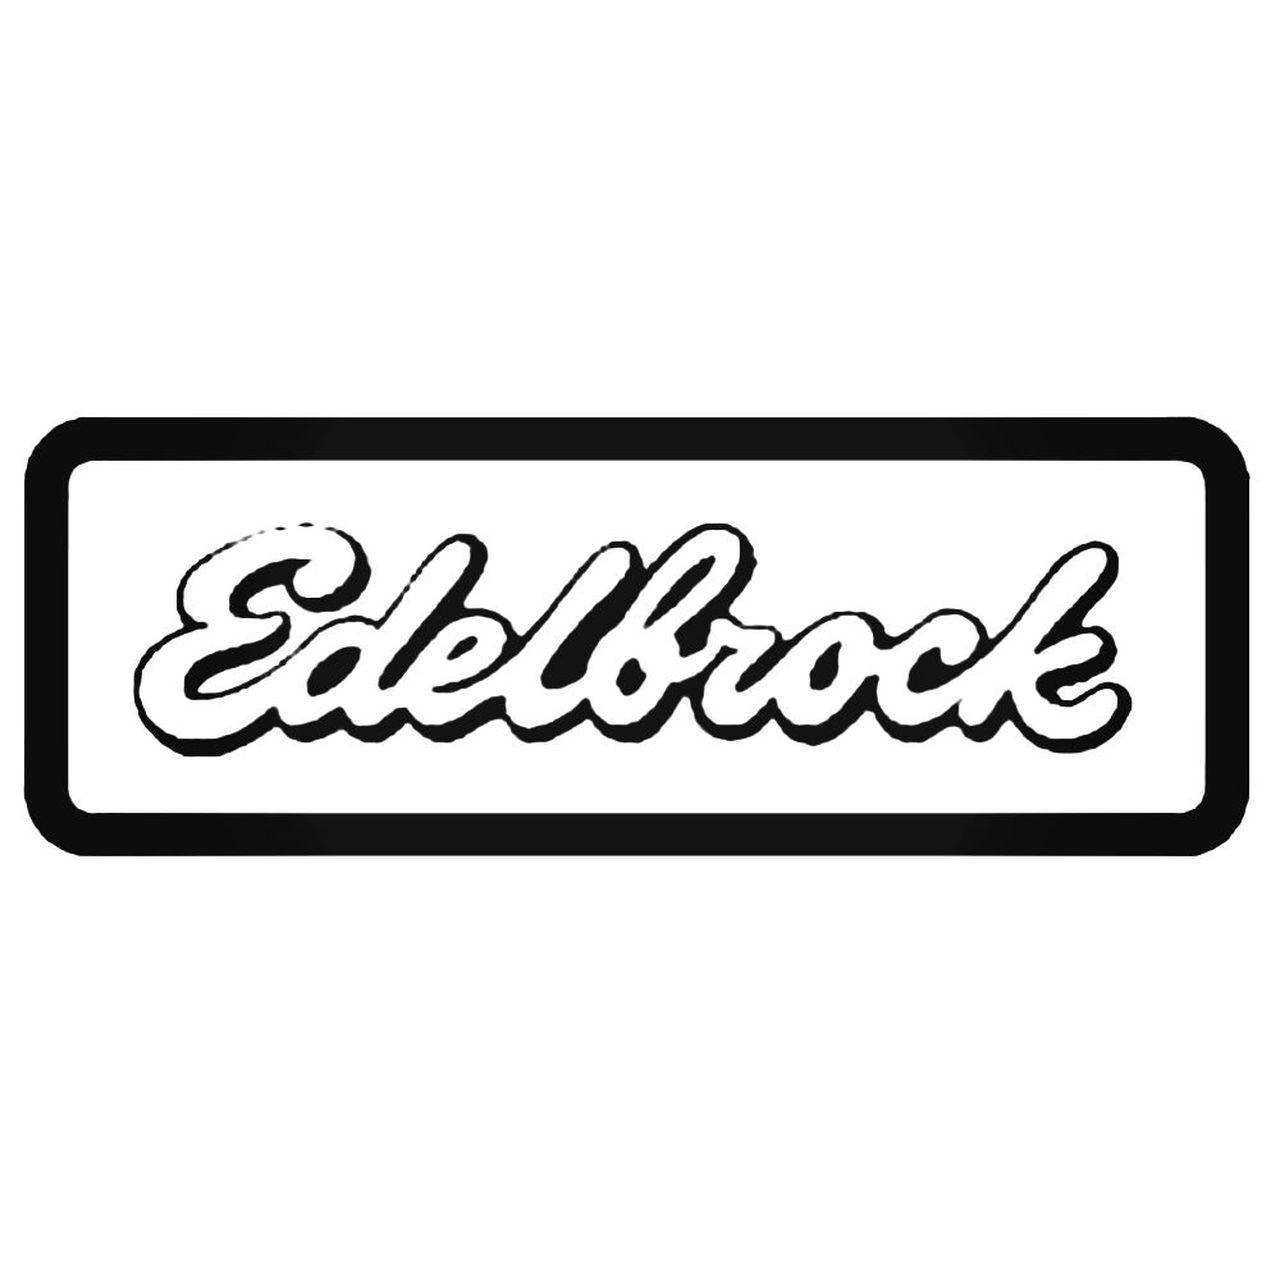 Eibach Logo - Eibach Springs Decal Sticker